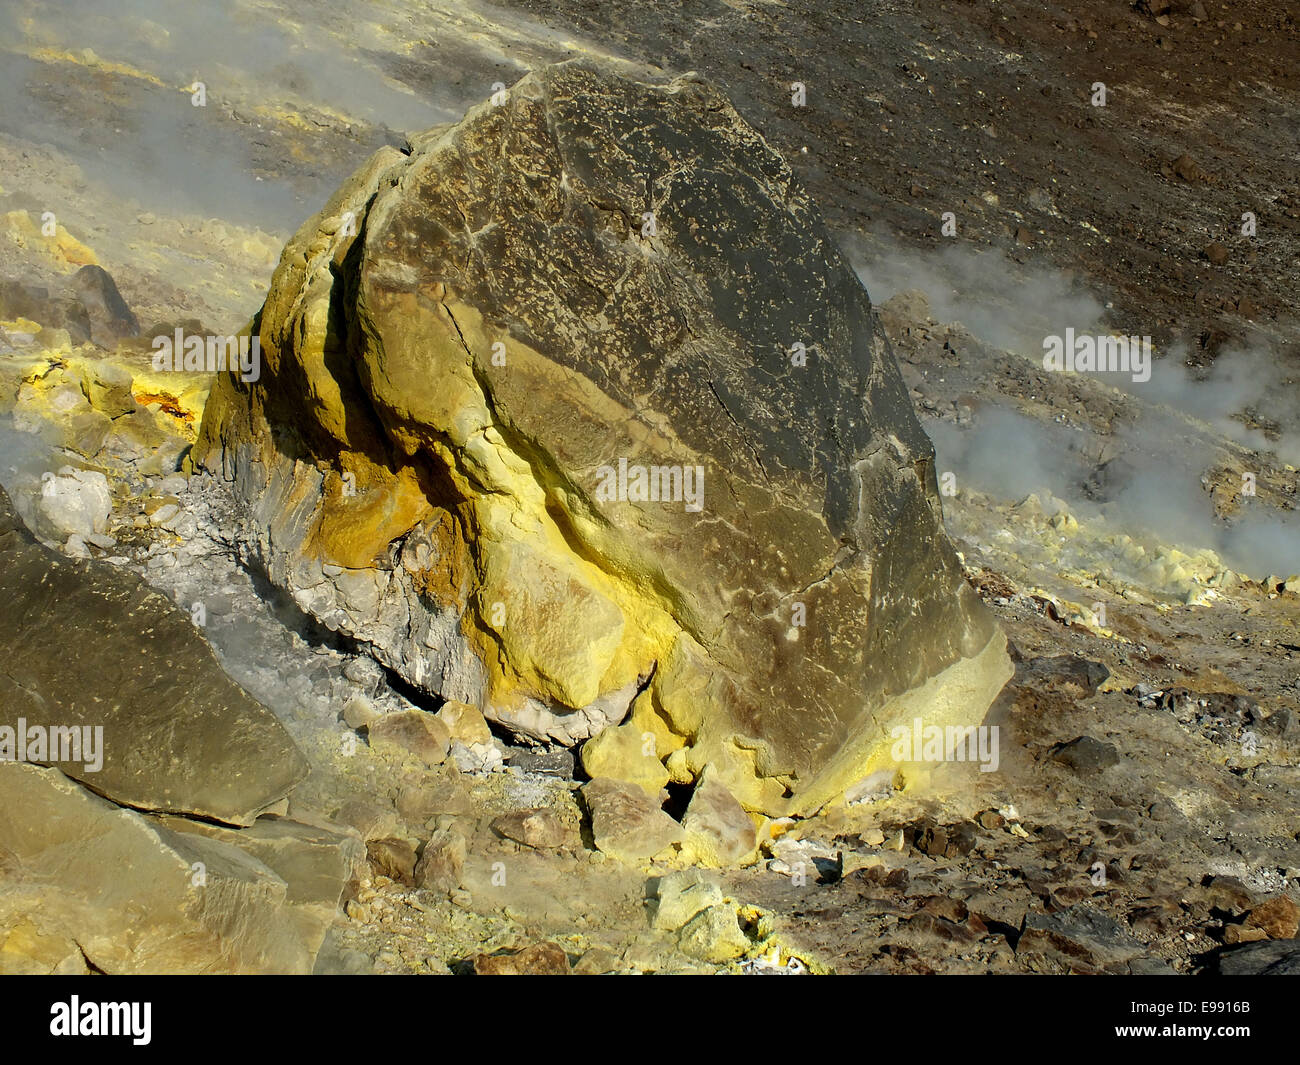 Bei einem Ausbruch des Vulkans Tonne heavy-Rock aus dem Krater geschleudert genannt Bomben. -Juni 2014 Stockfoto